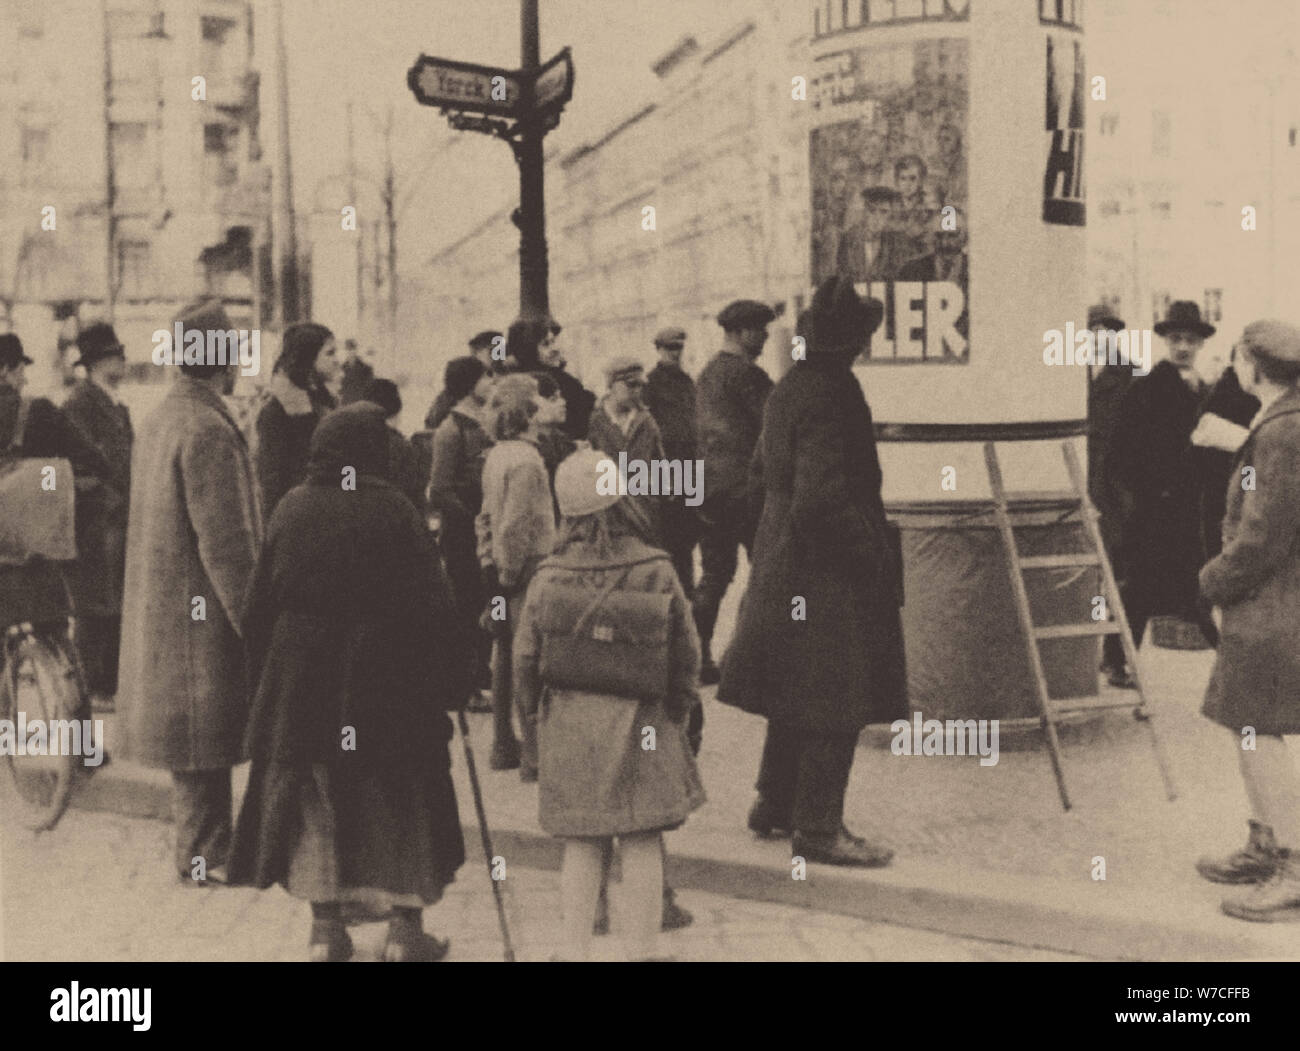 Ein Wahlplakat der Nsdap auf den Straßen von Berlin, 1932. Stockfoto